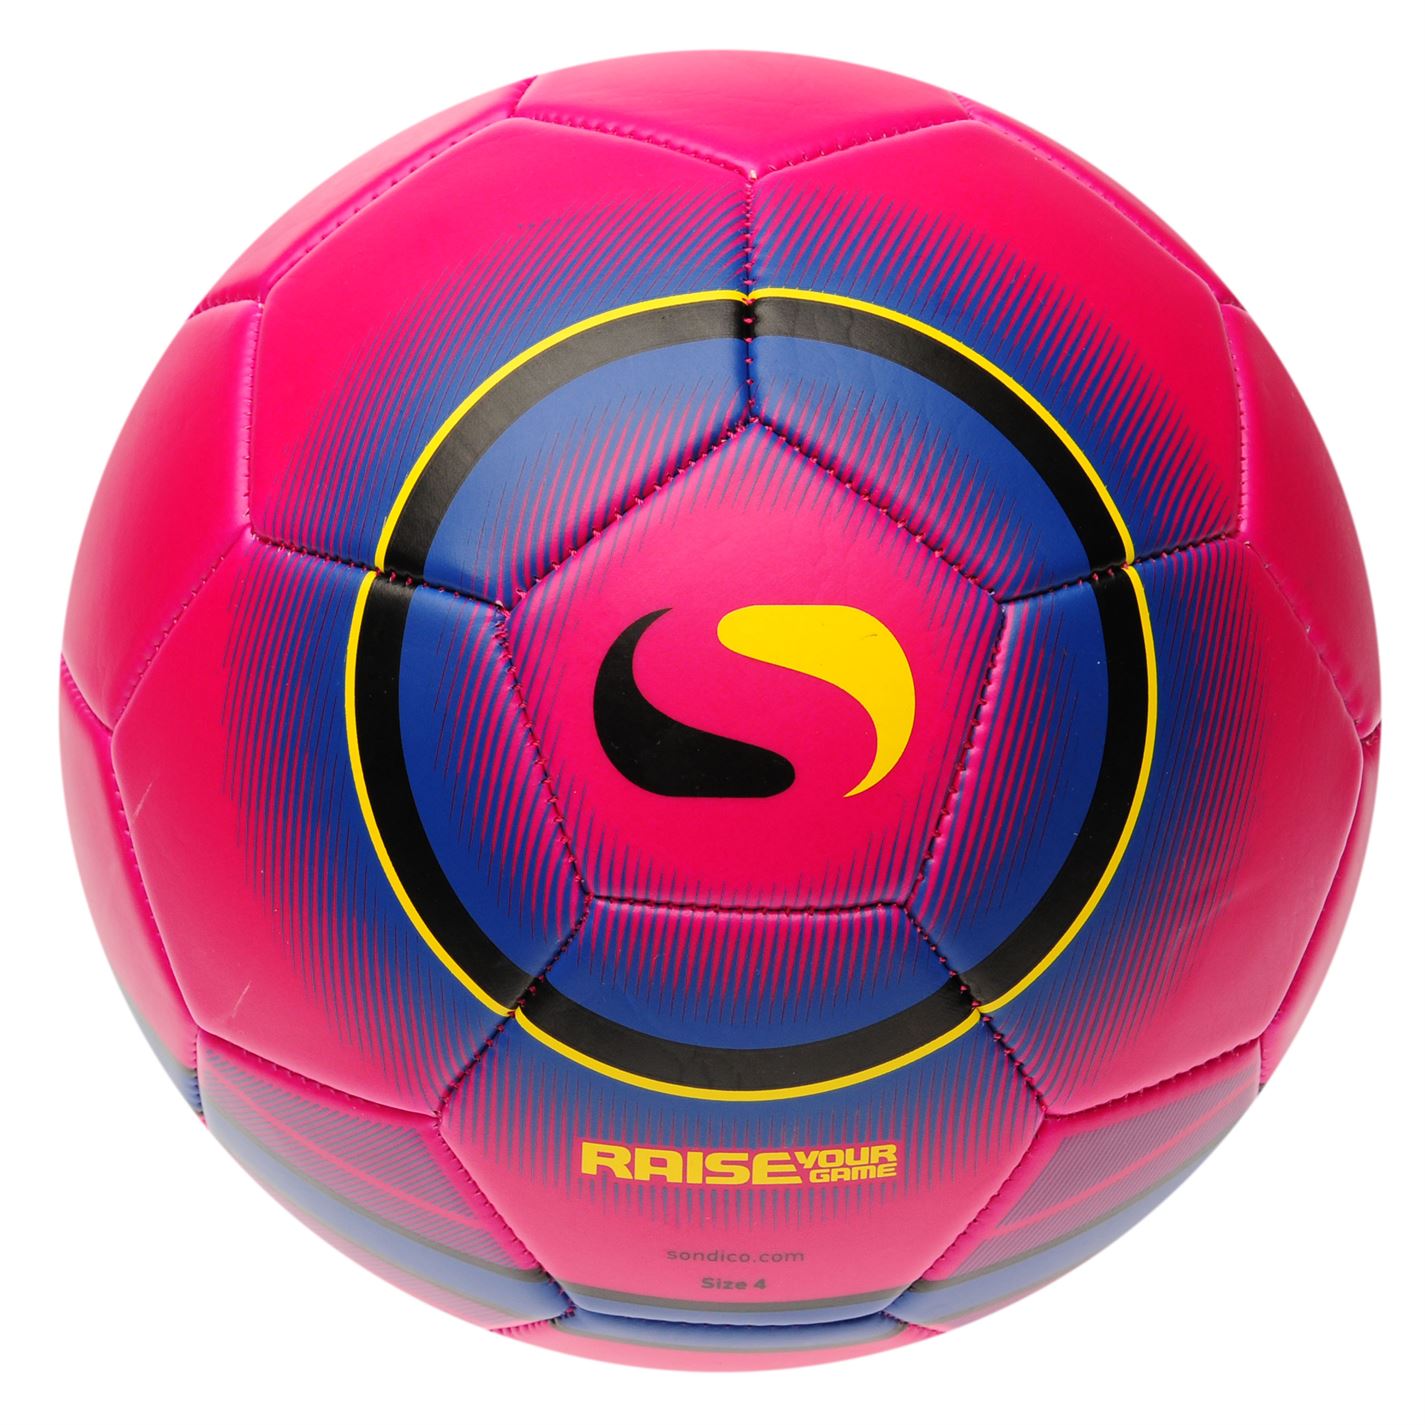 Sondico Footballs Multi Styles Colours Sport Equipment Soccer Balls | eBay